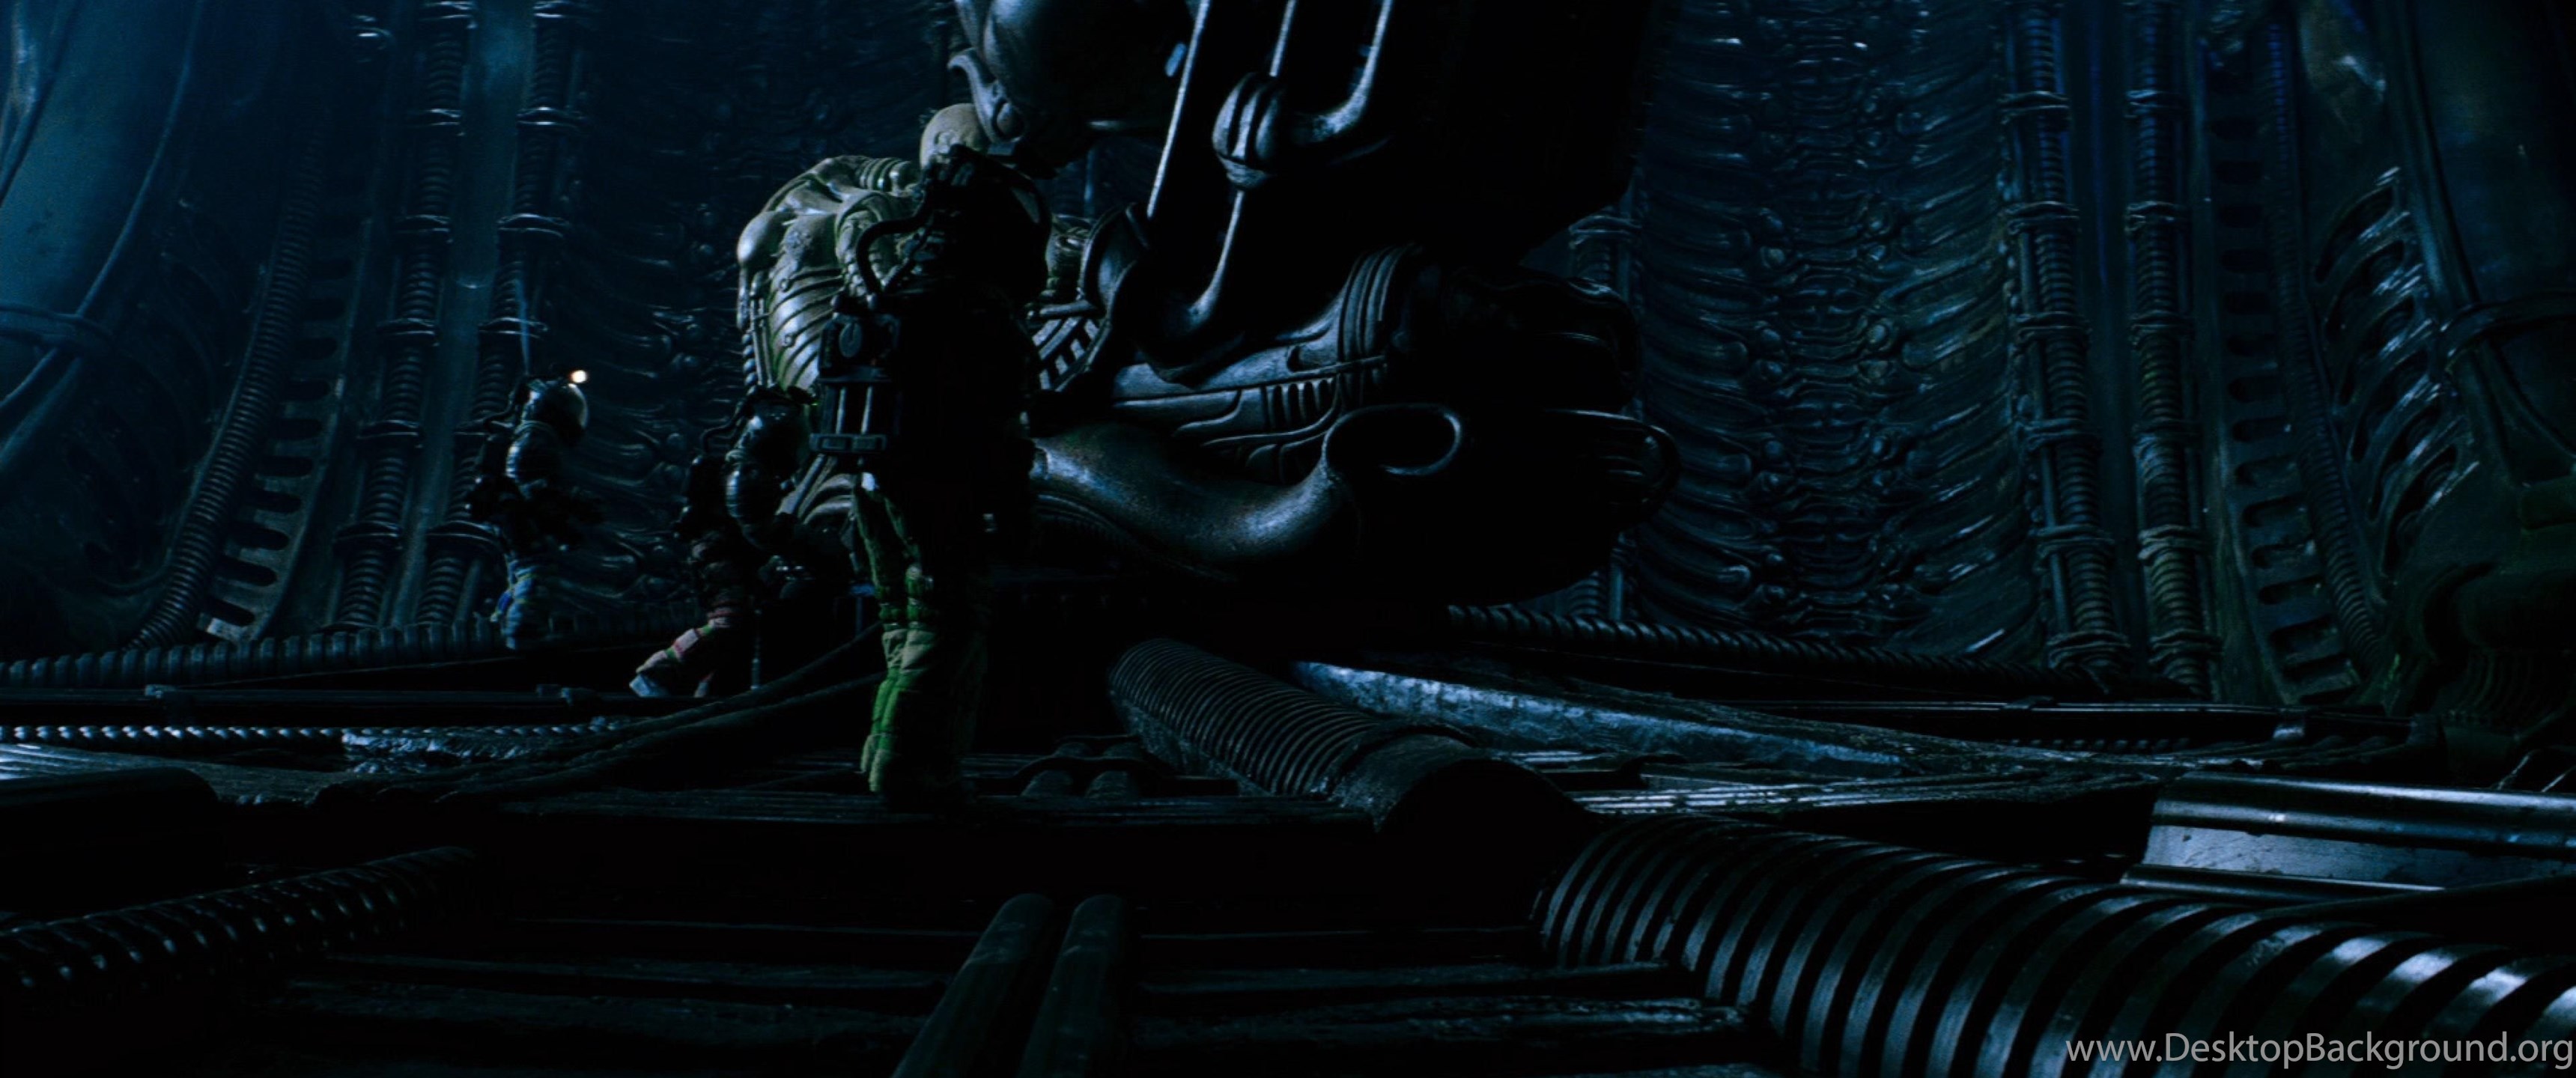 Alien Vs Predator 4k Wallpapers See More Of Alien Vs Dengan Santai